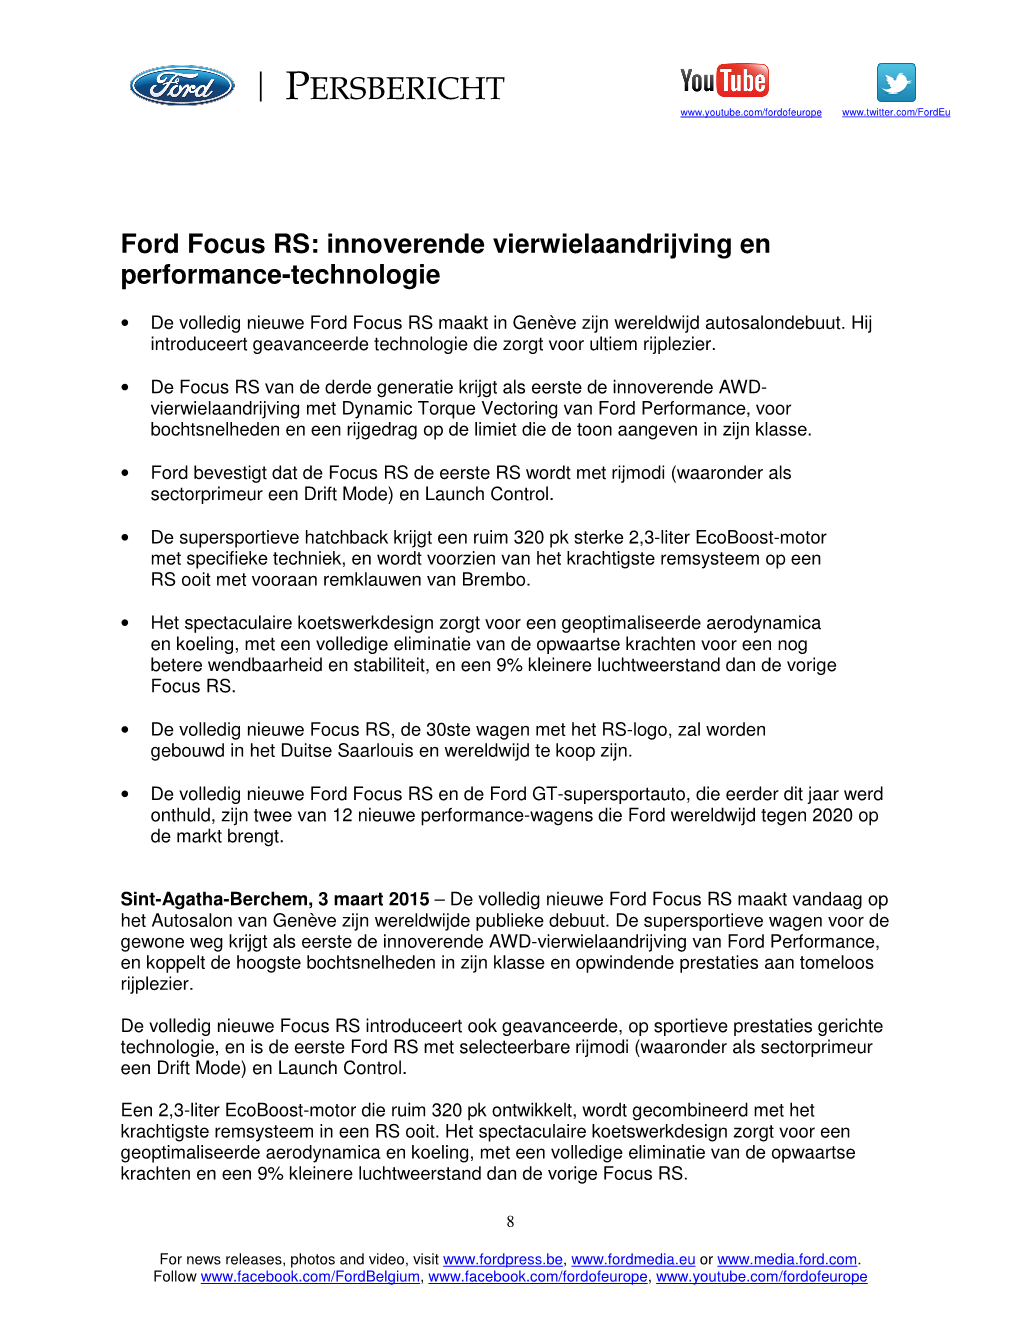 Ford Focus RS: Innoverende Vierwielaandrijving En Performance-Technologie